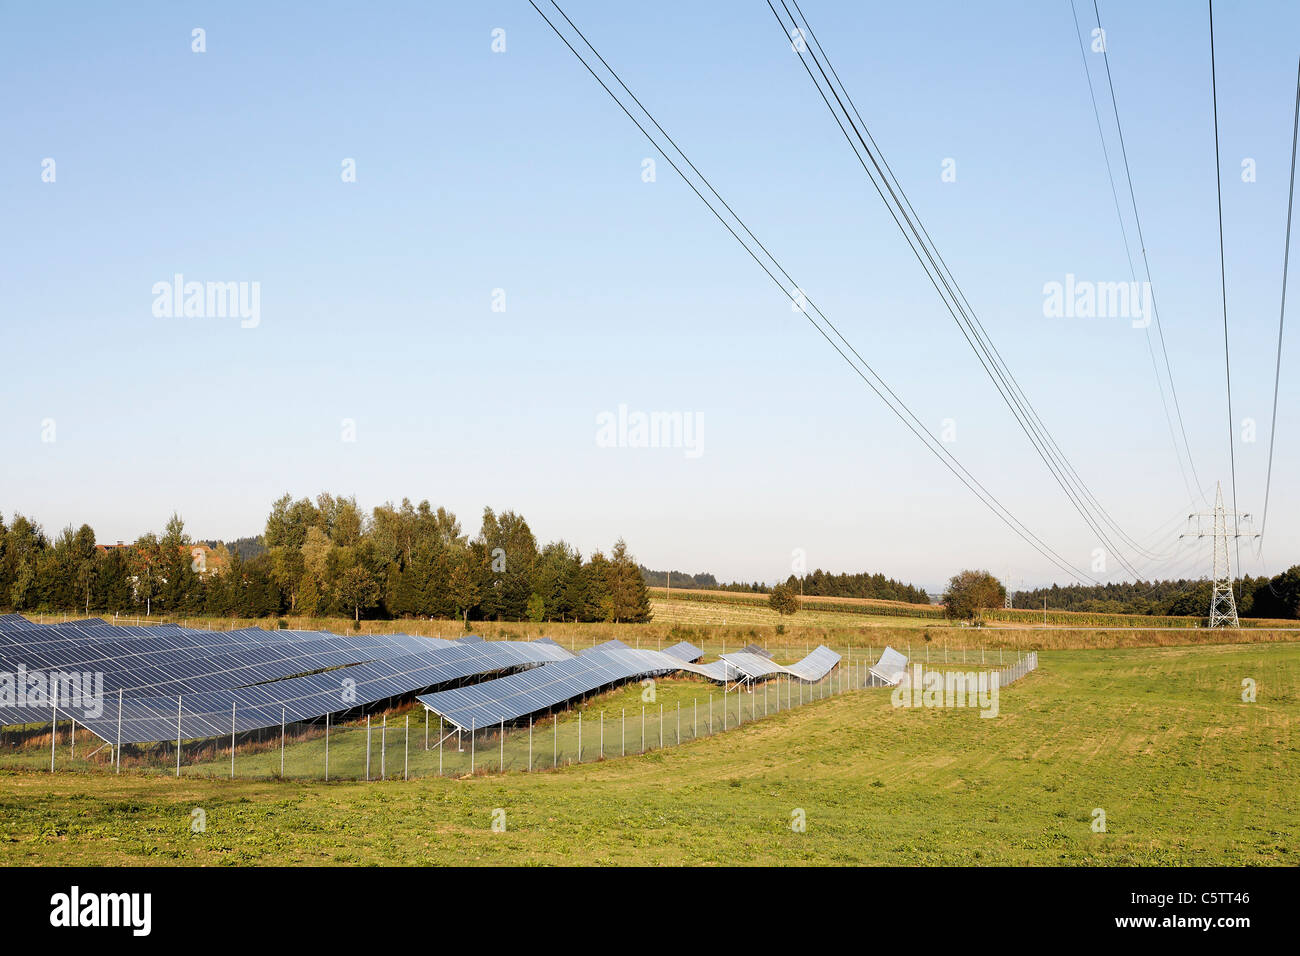 Allemagne, Bavière, vue d'installation solaire à vilshofen Banque D'Images